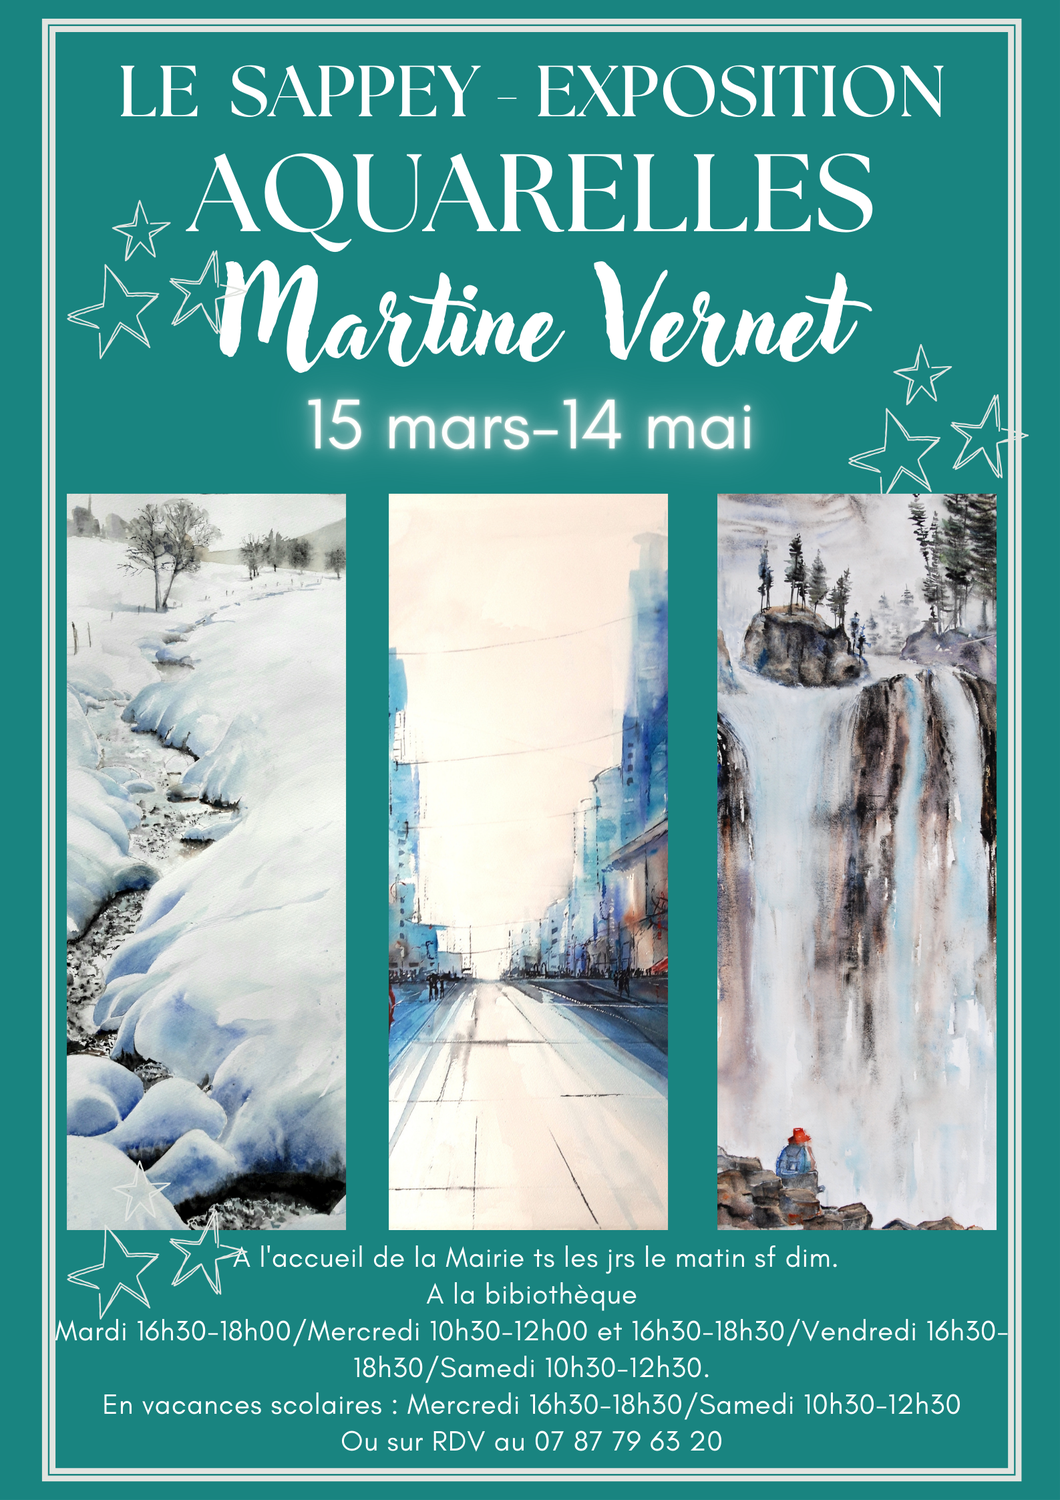 Exposition d'aquarelles de Martine Vernet au Sappey